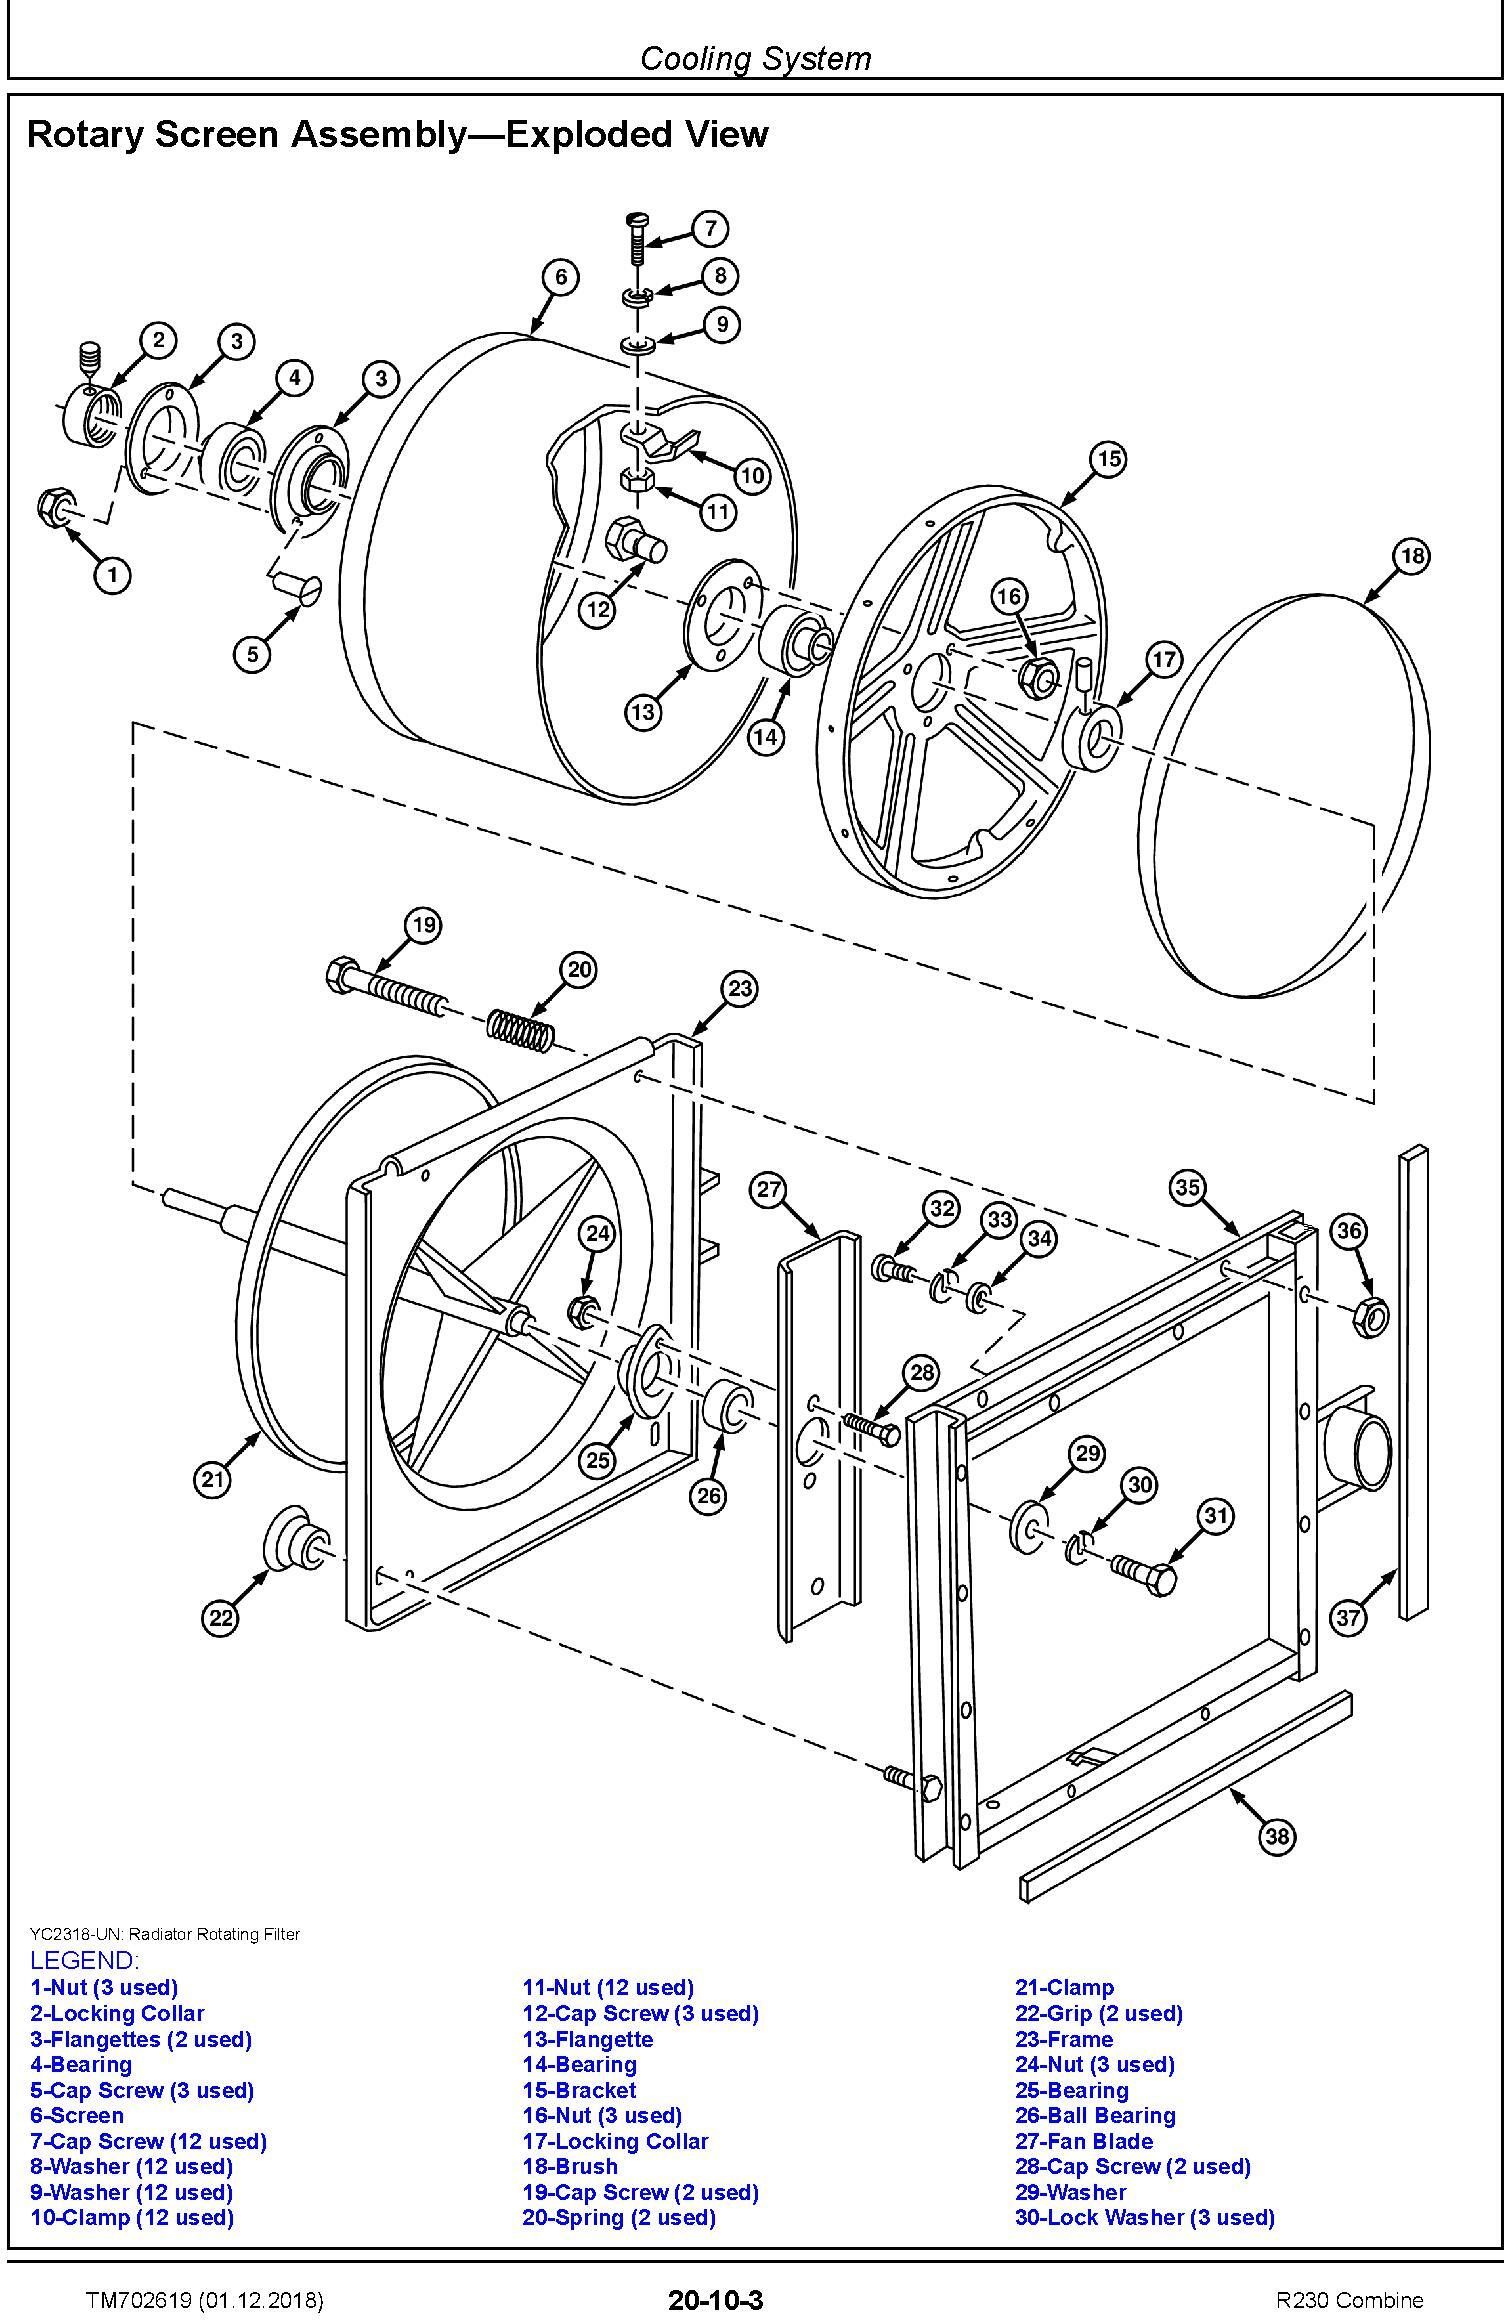 John Deere R230 Combine Technical Service Manual (TM702619) - 2